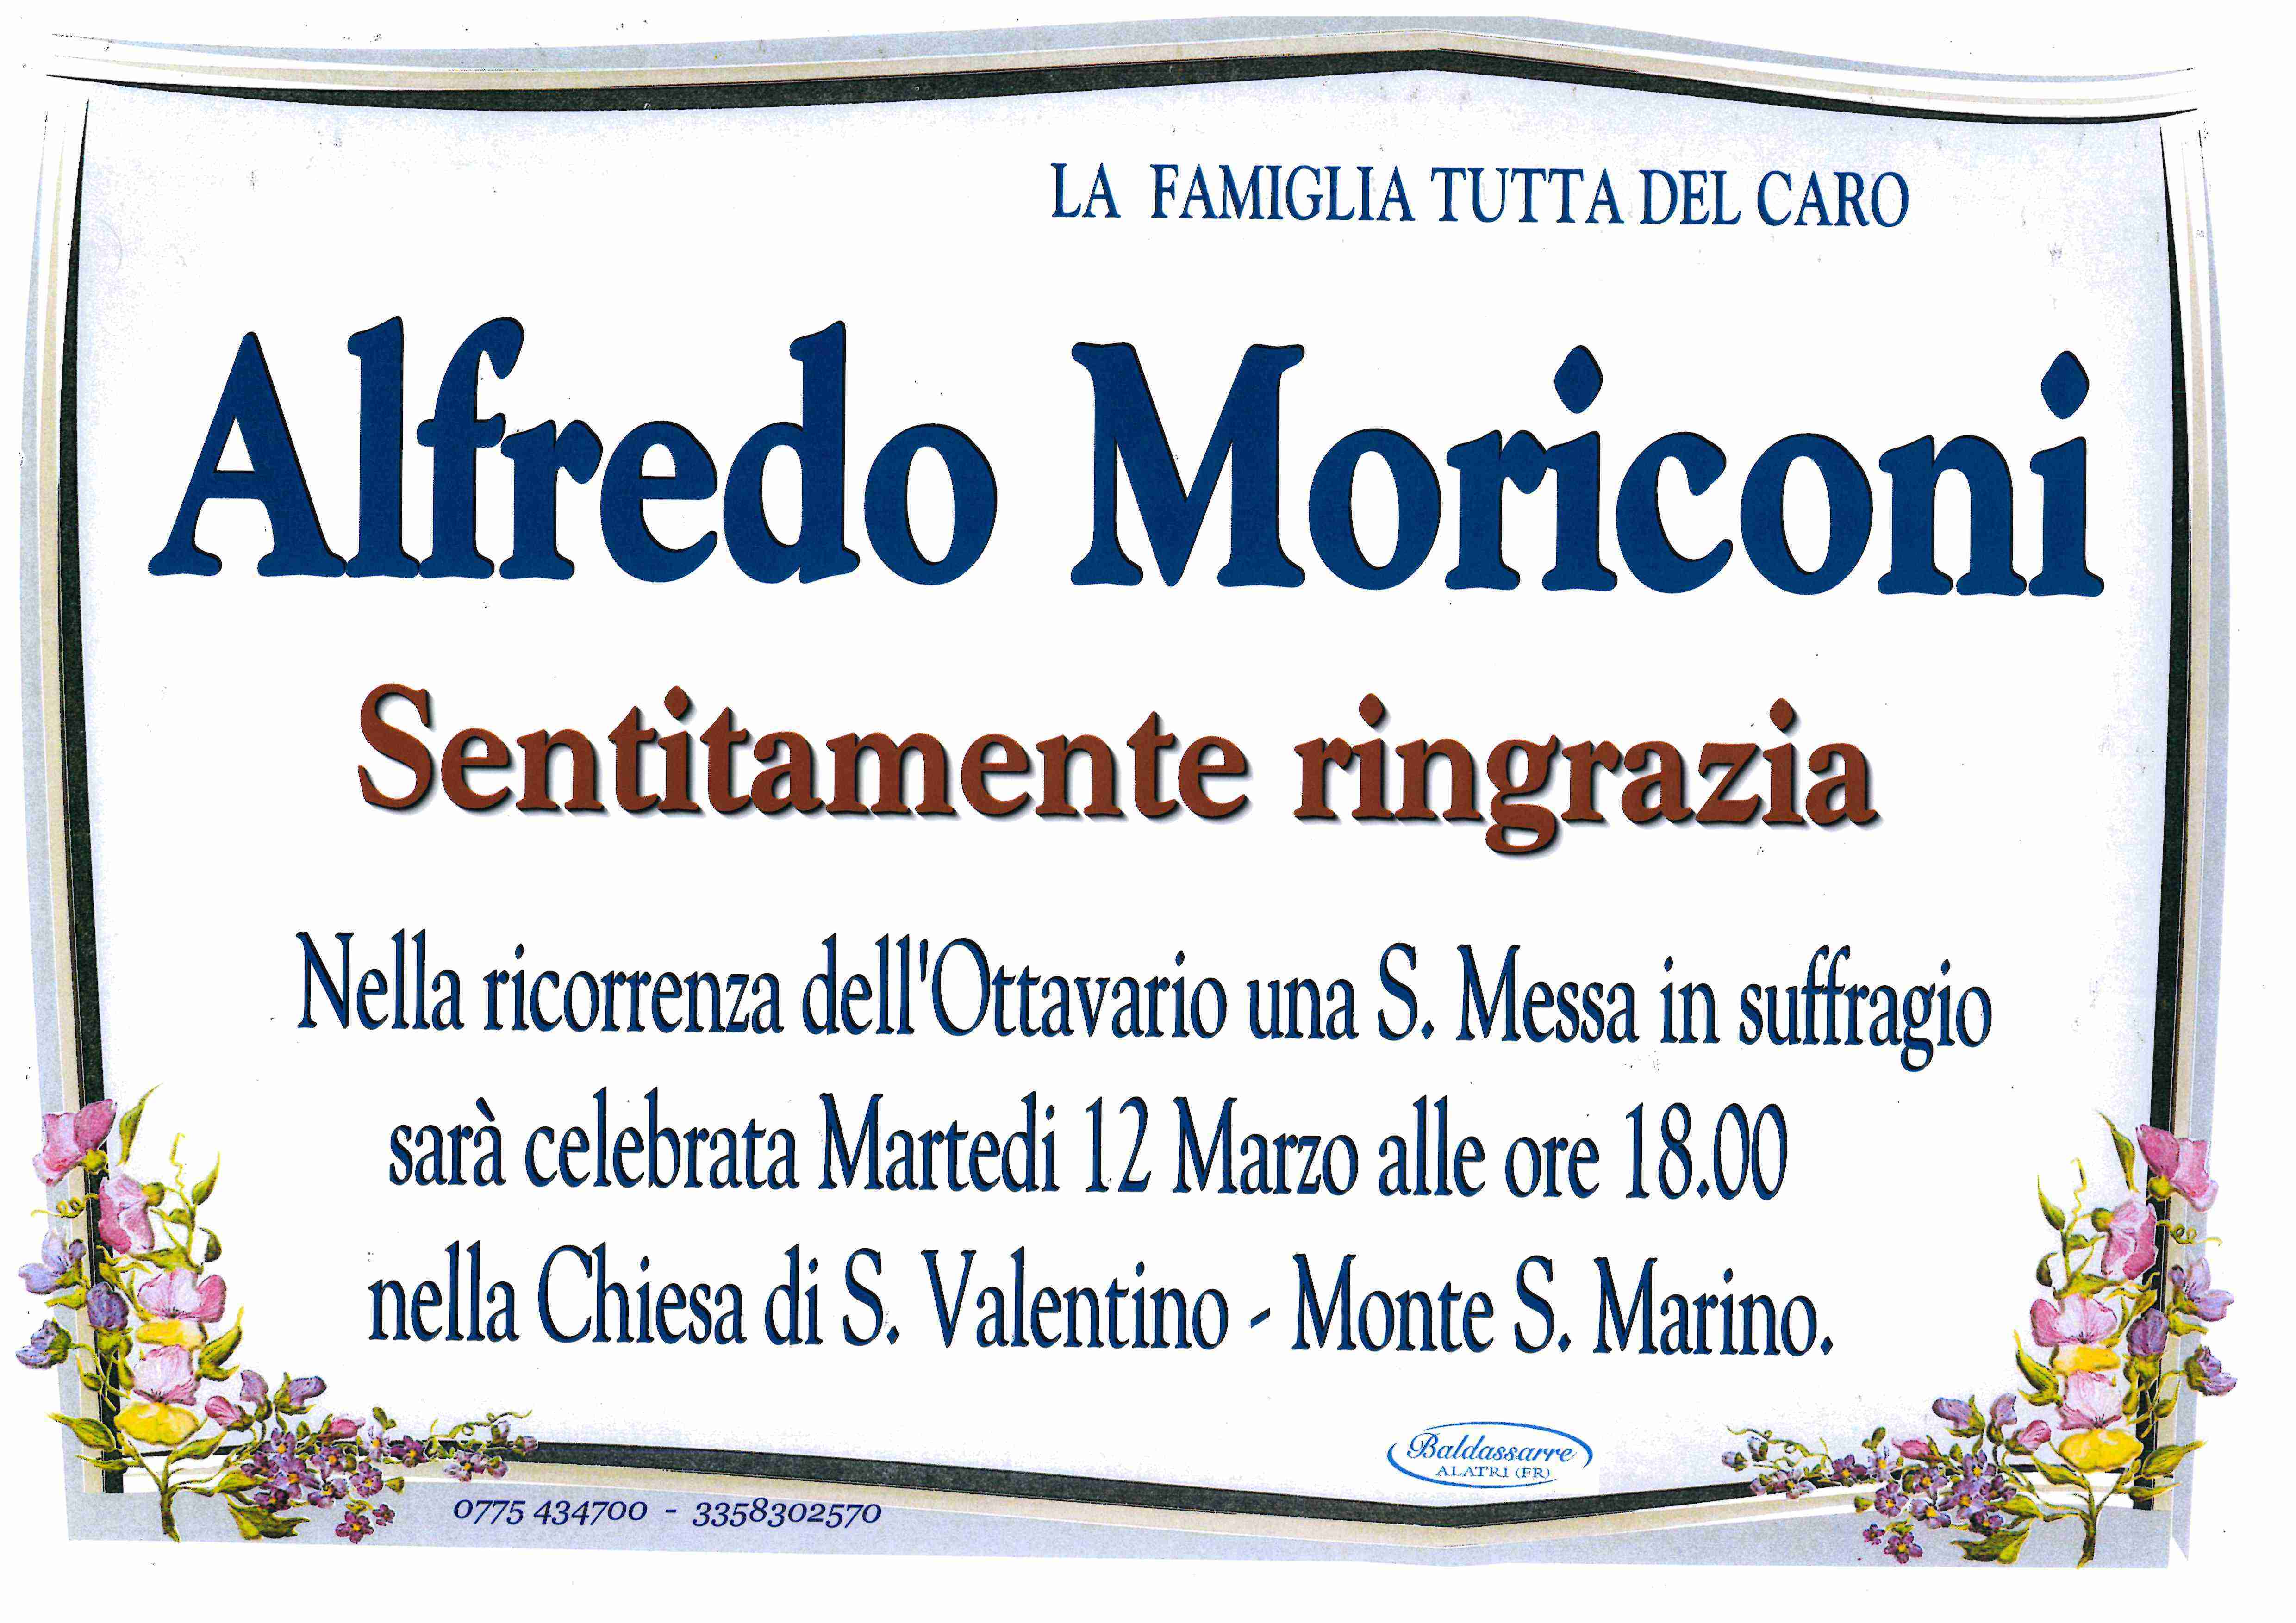 Alfredo Moriconi